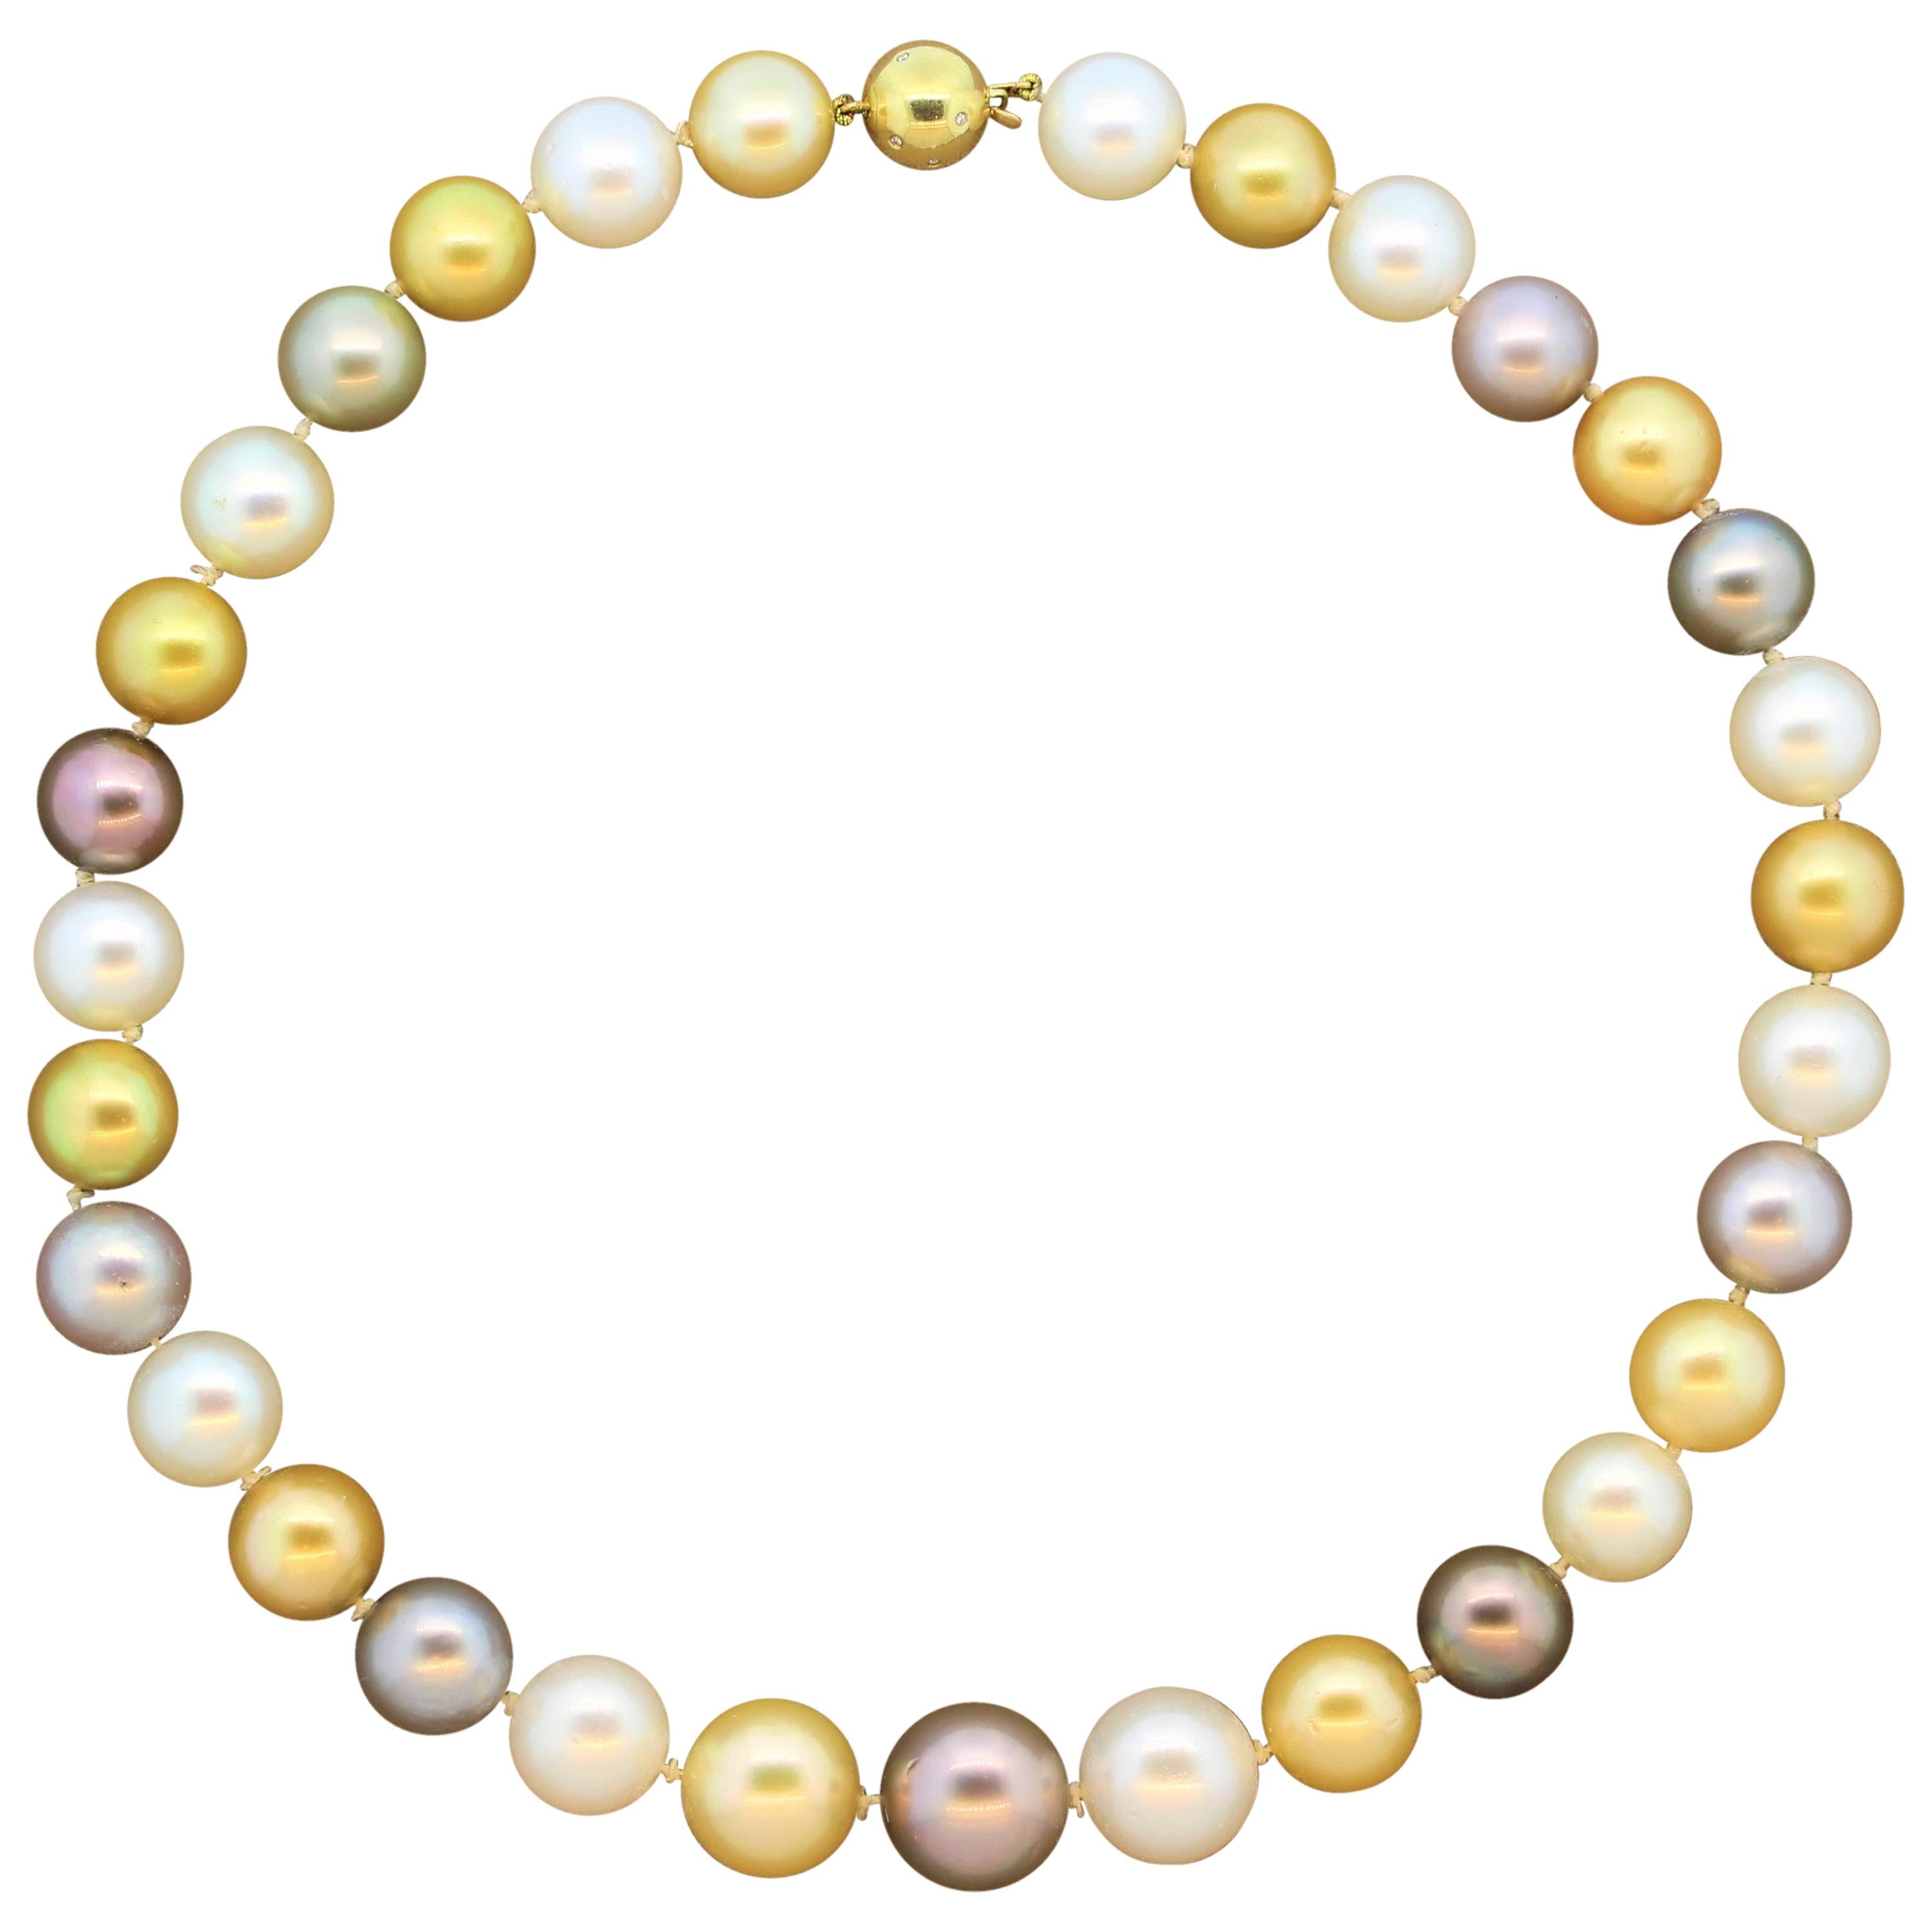 Goldhalskette mit mehrfarbigen Südsee- und Tahiti-Perlen und Diamanten